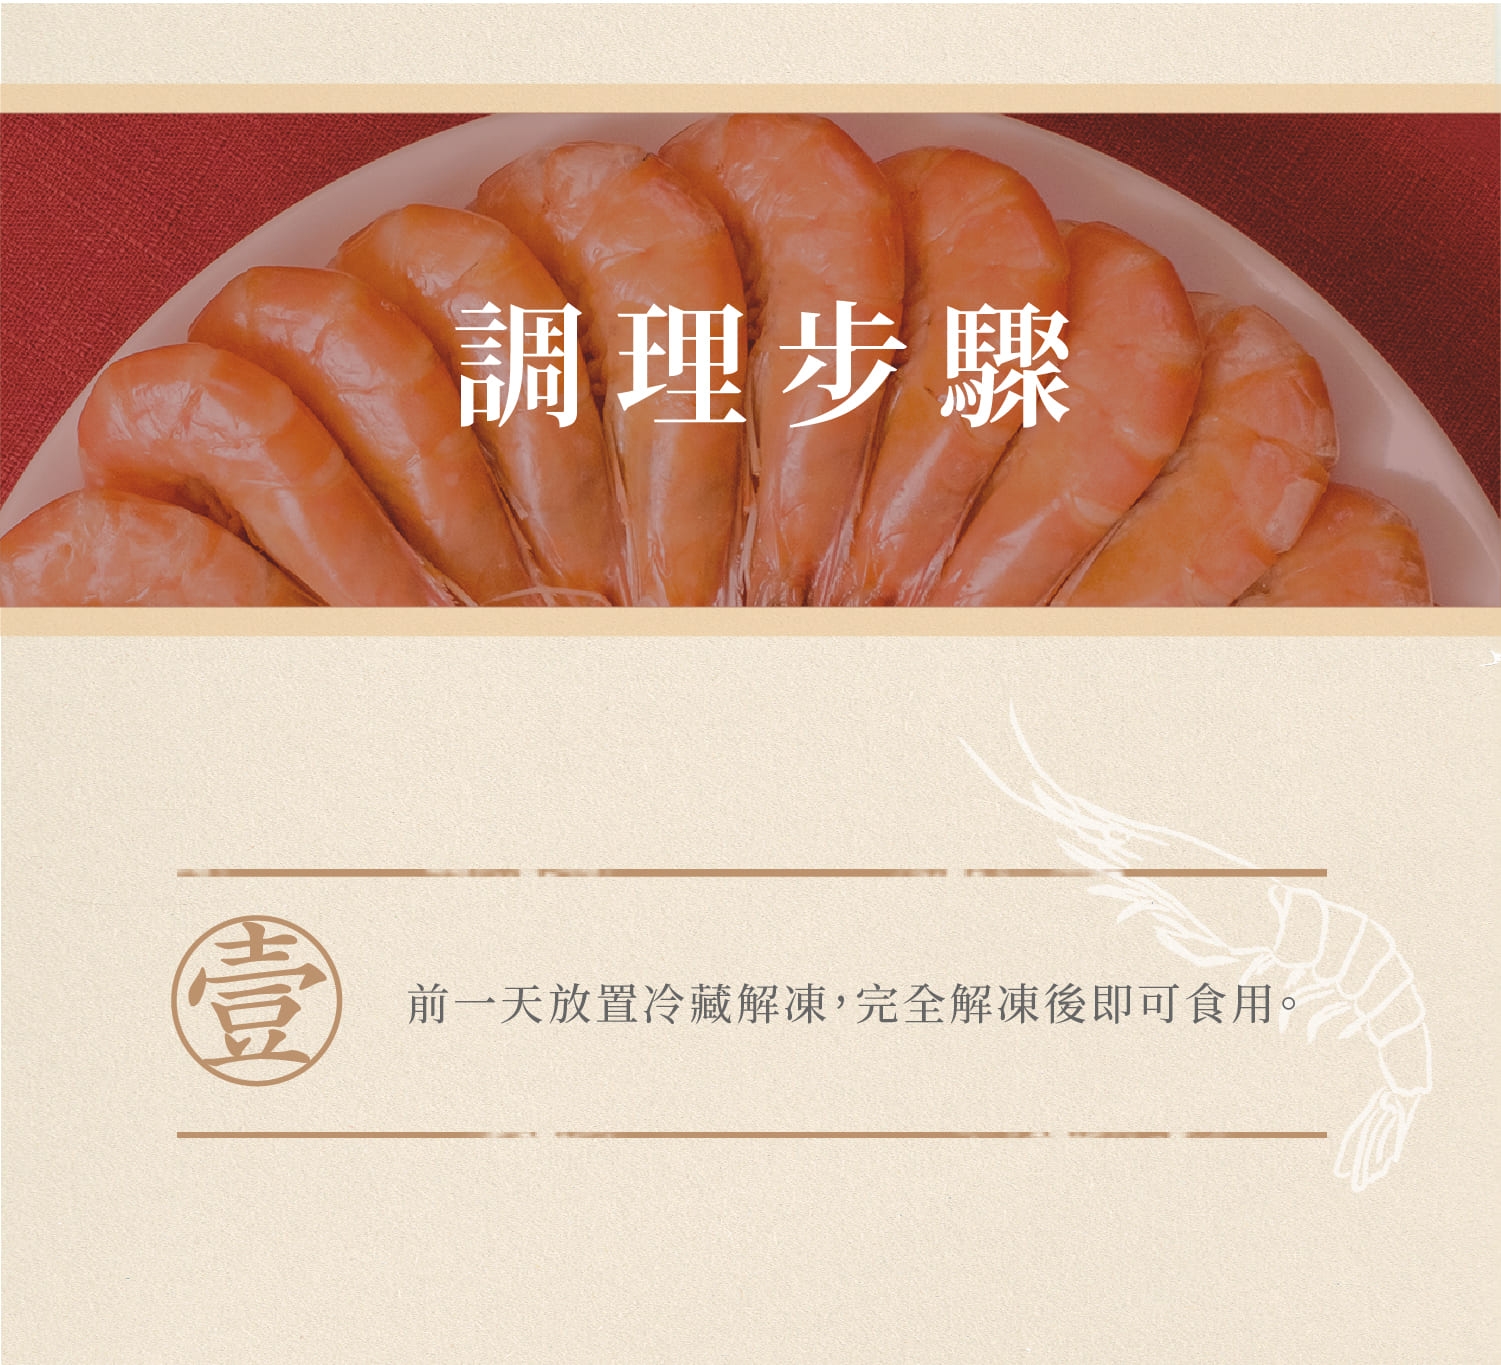 果貿吳媽家 眷村紹興酒蝦(500g/份) (年菜預購)